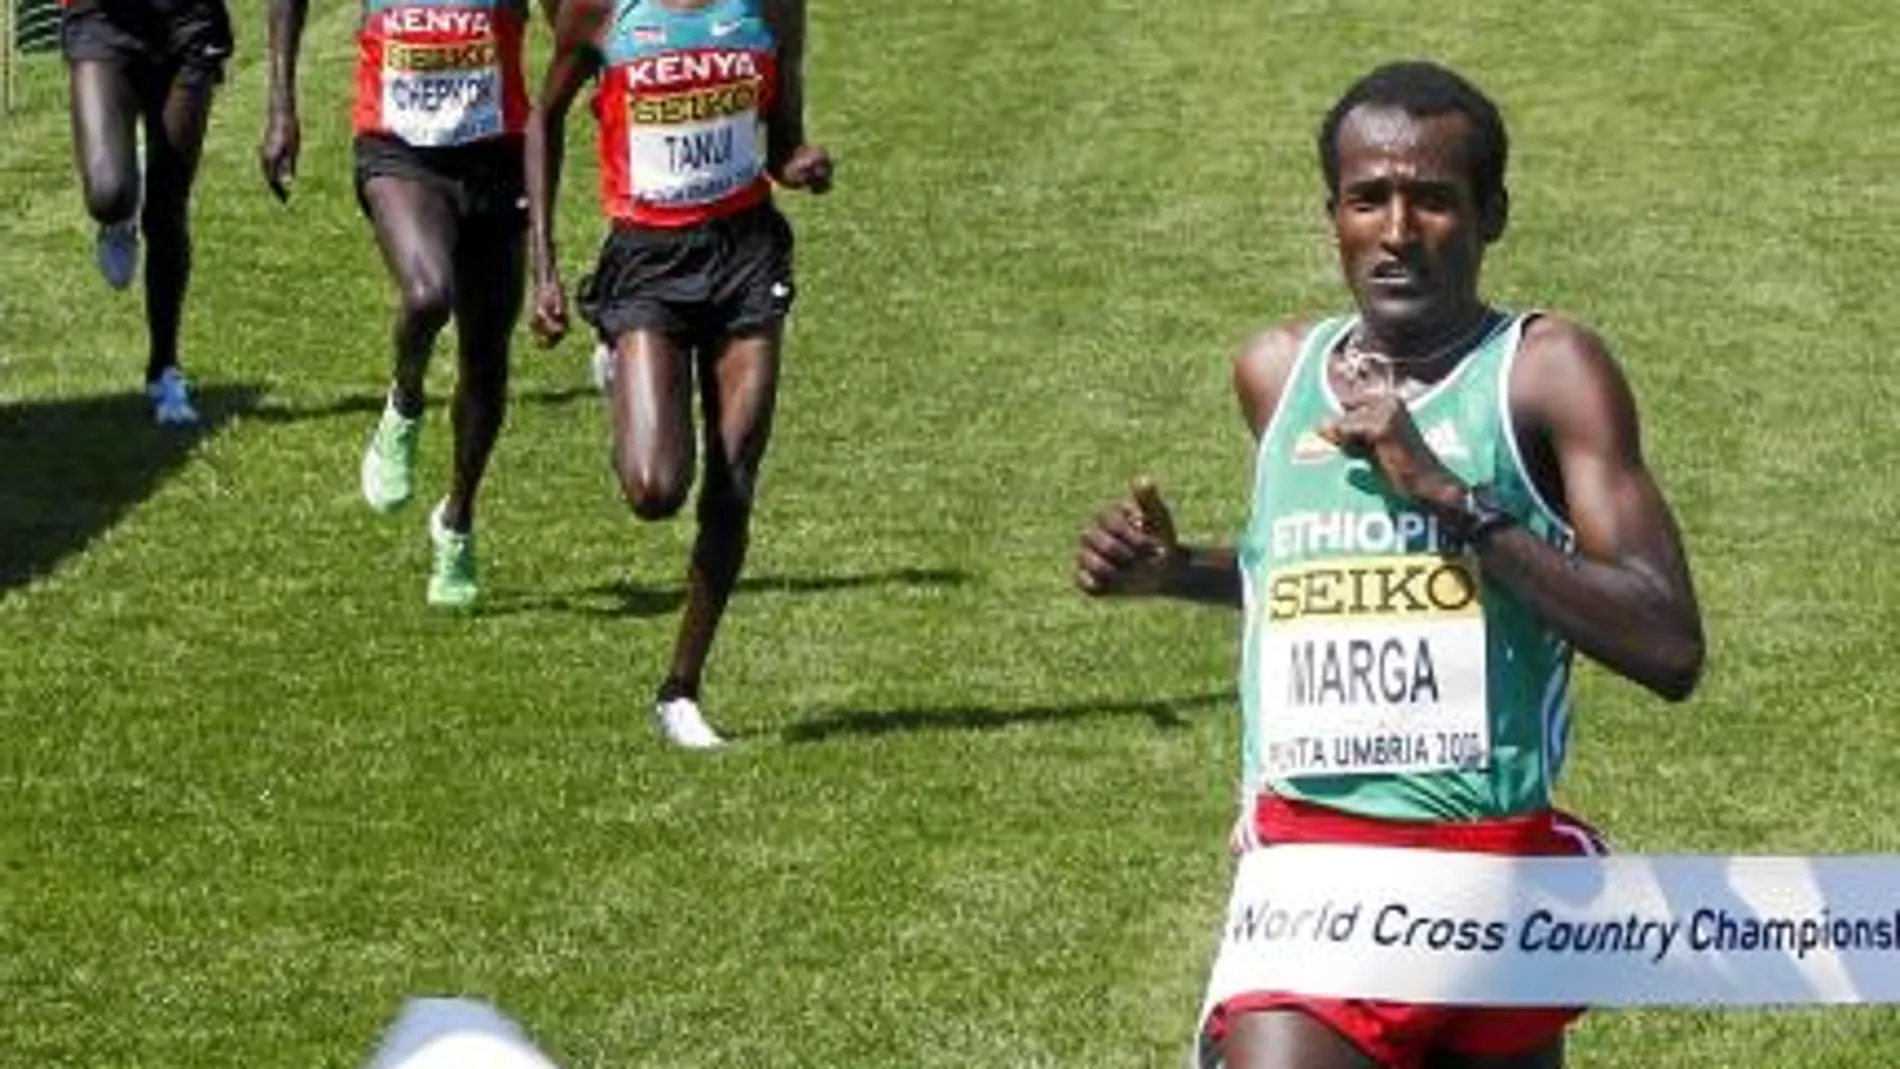 EL ETÍOPE MARGA superó en el esprint final al «ejército» de kenianos